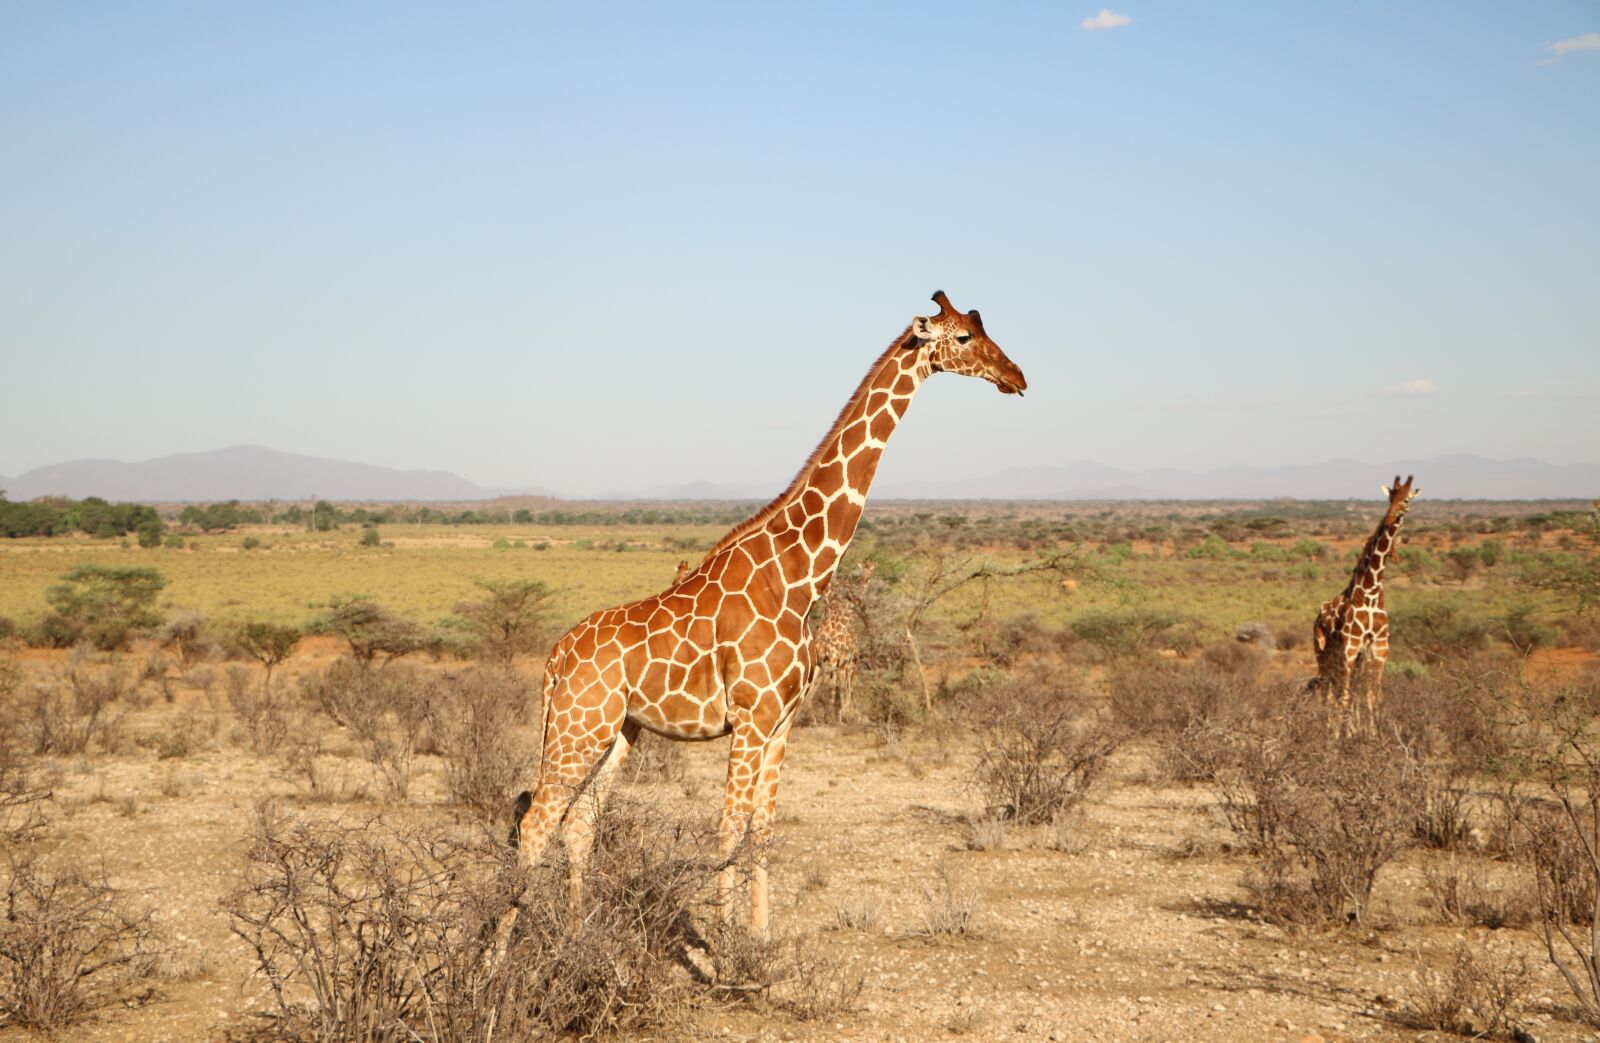 Canon EOS 760D (EOS Rebel T6s / EOS 8000D) sample photo. Giraffe, nature, safari photography